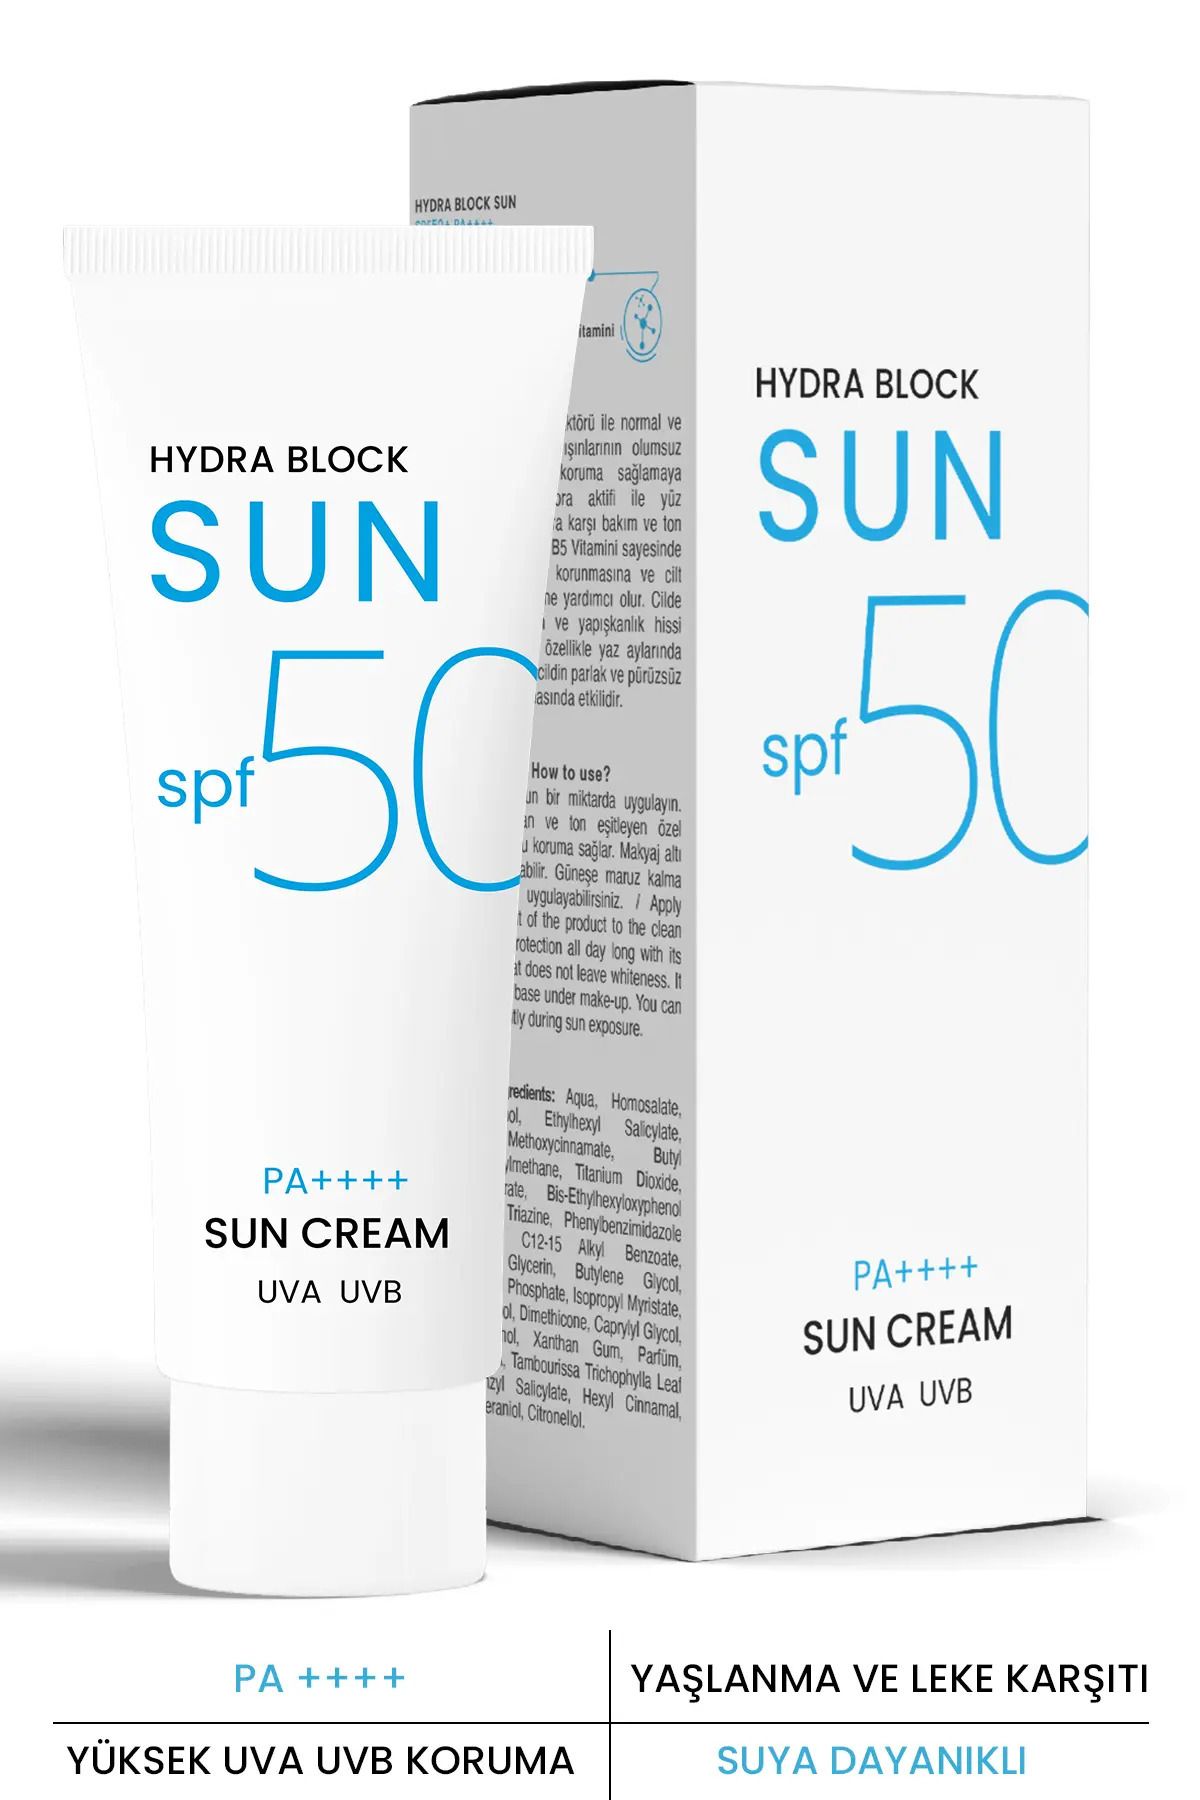 PROCSIN کرم ضد آفتاب Hydra Block SUN Spf 50+ کاهش قرمزی و التهاب پوست 50میل